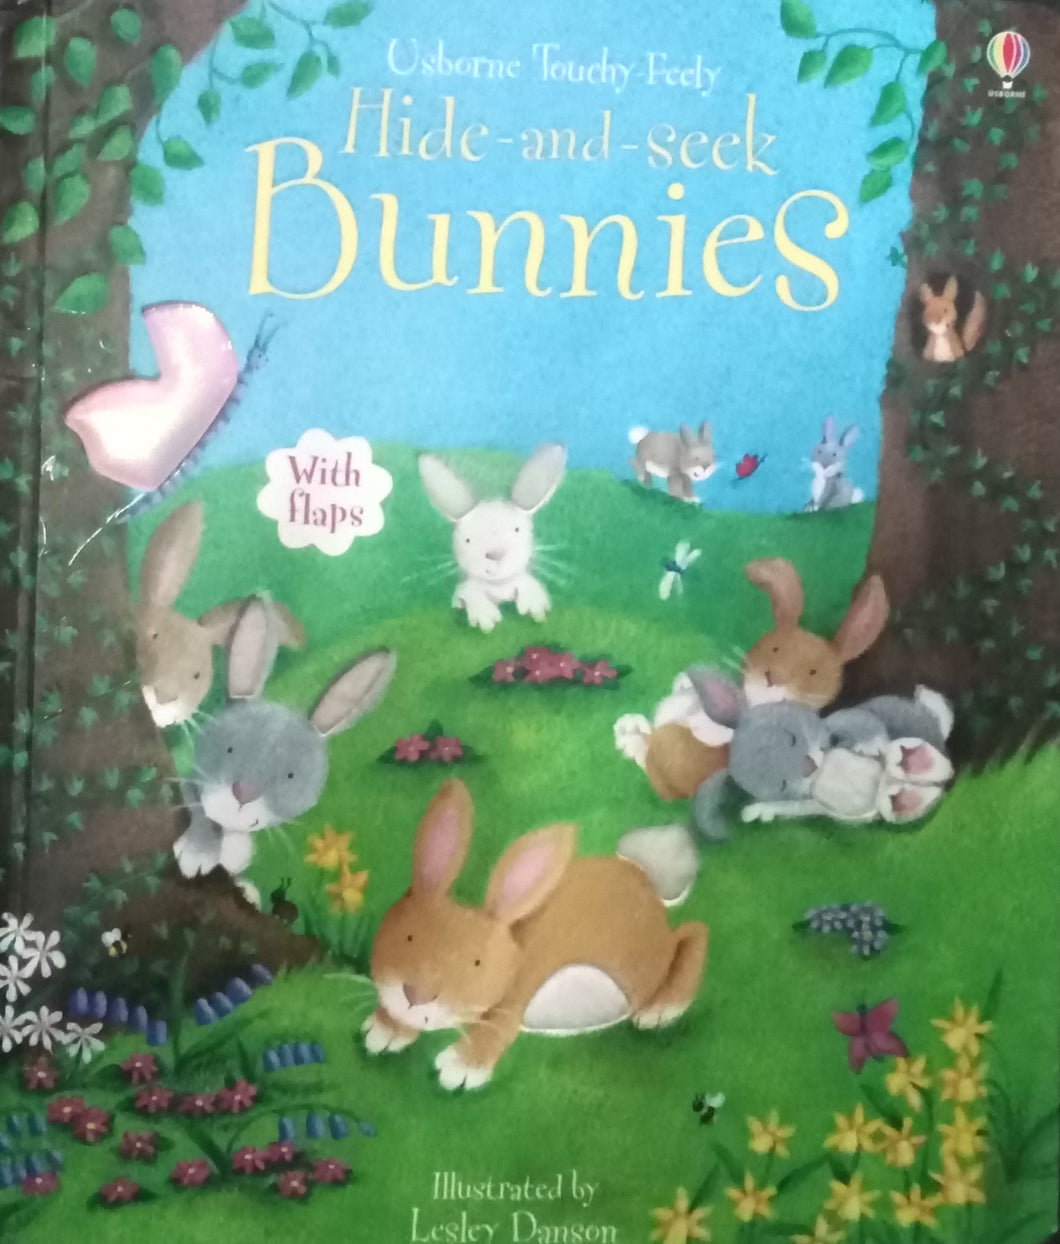 Hide and Seek Bunnies by Lesley Danson